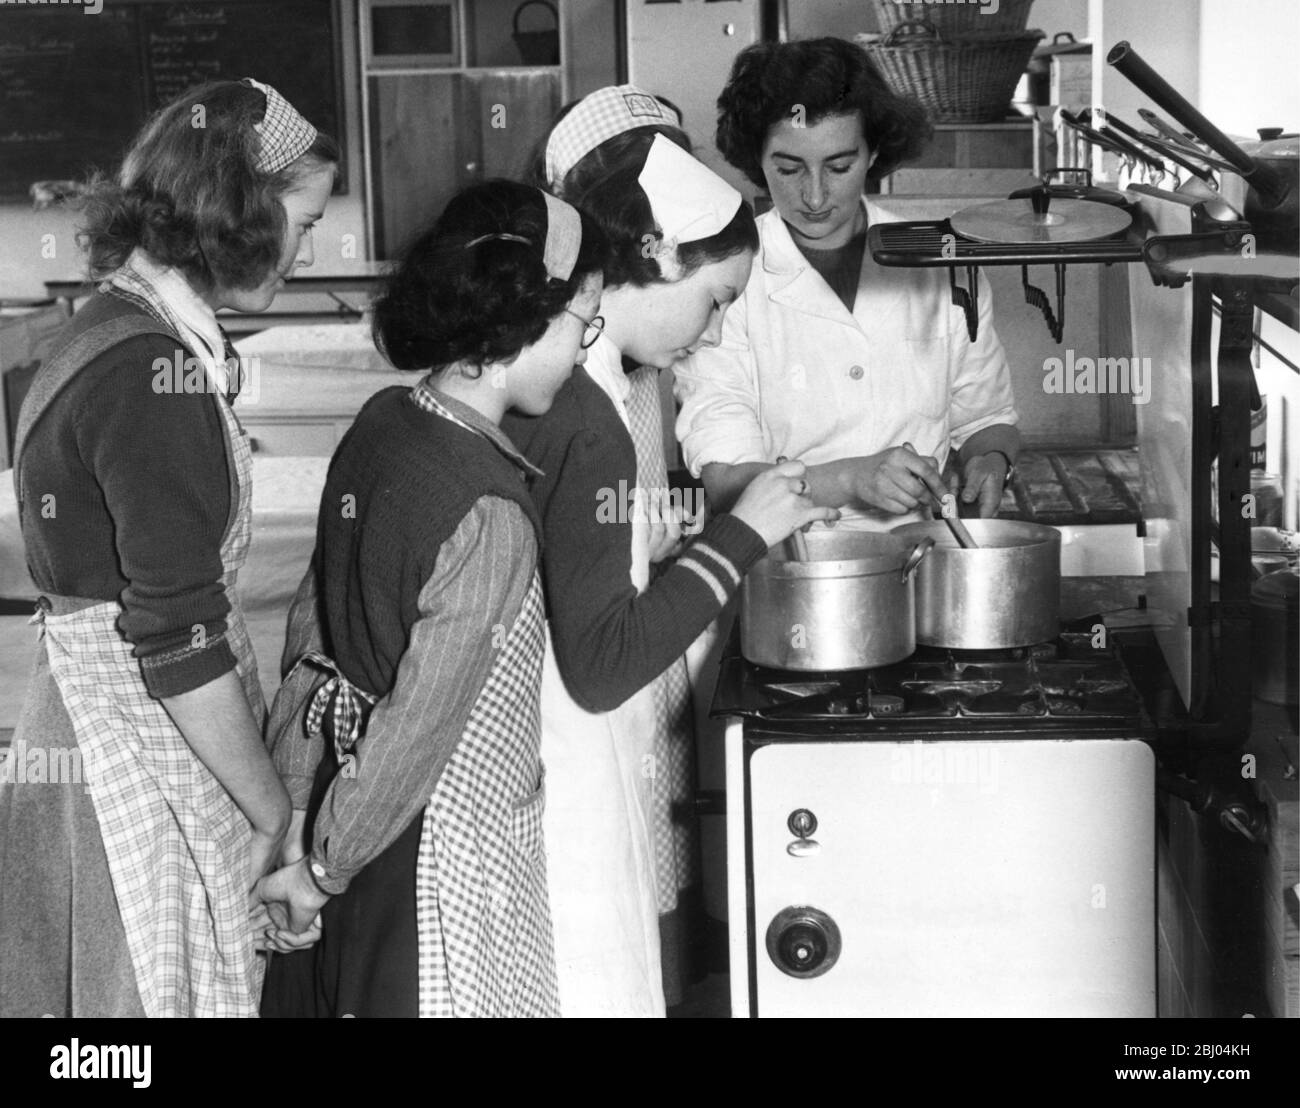 Barclay Secondary Modern School, Stevenage. Miss Cleaver zeigt den Mädchen während einer Domestic Science Lektion, wie sie richtig kochen können. 1949 Stockfoto